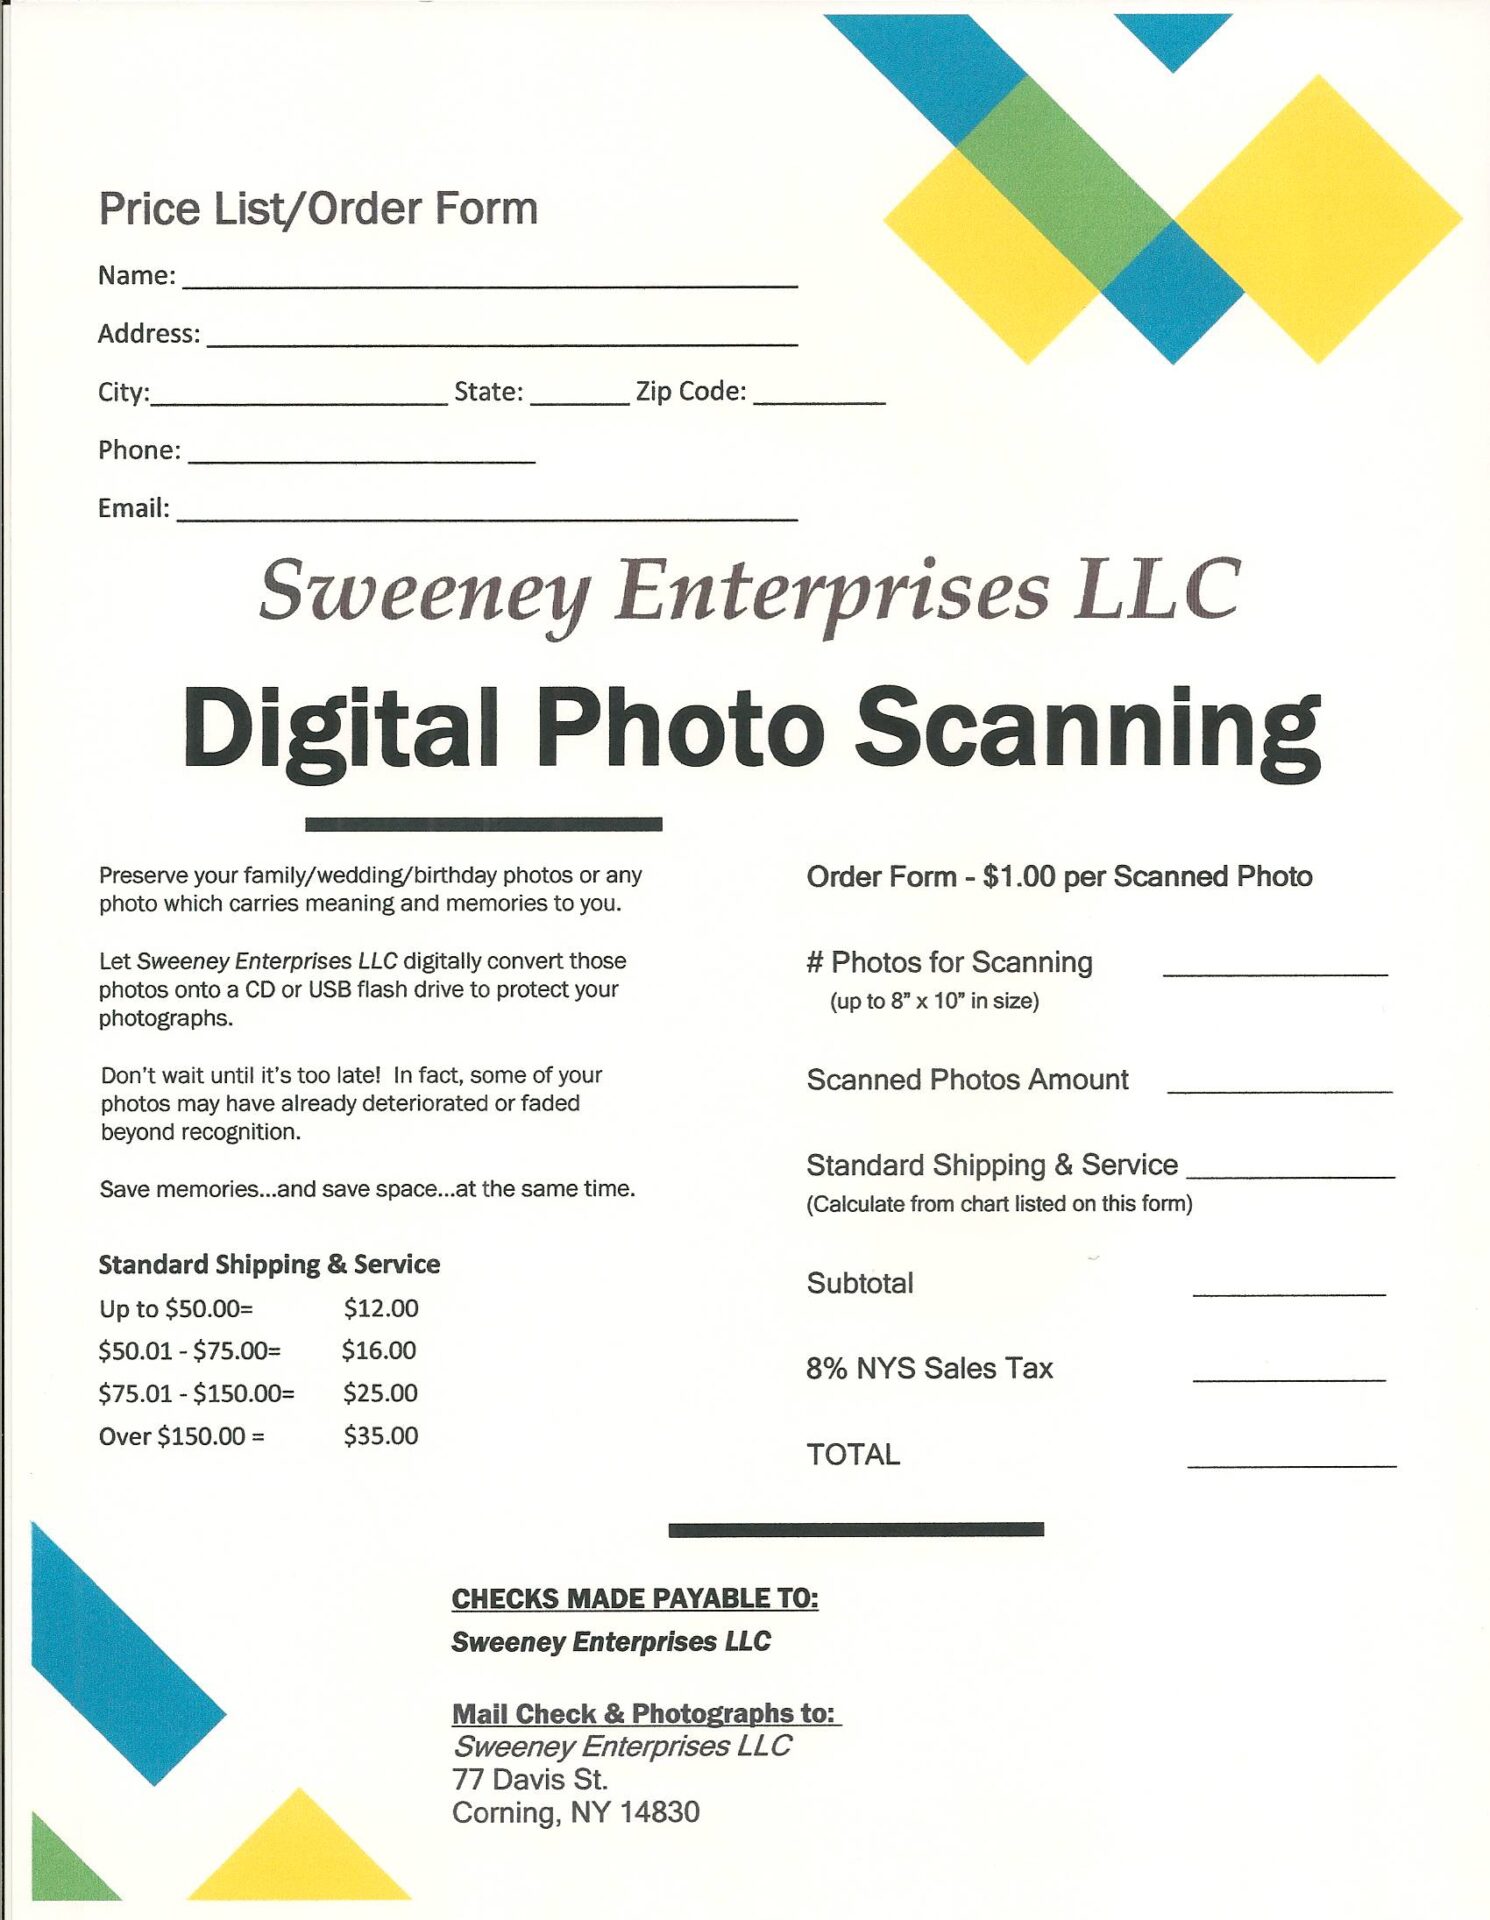 Price list-order form for Sweeney Enterprises LLC Digital Photo Scanning Service